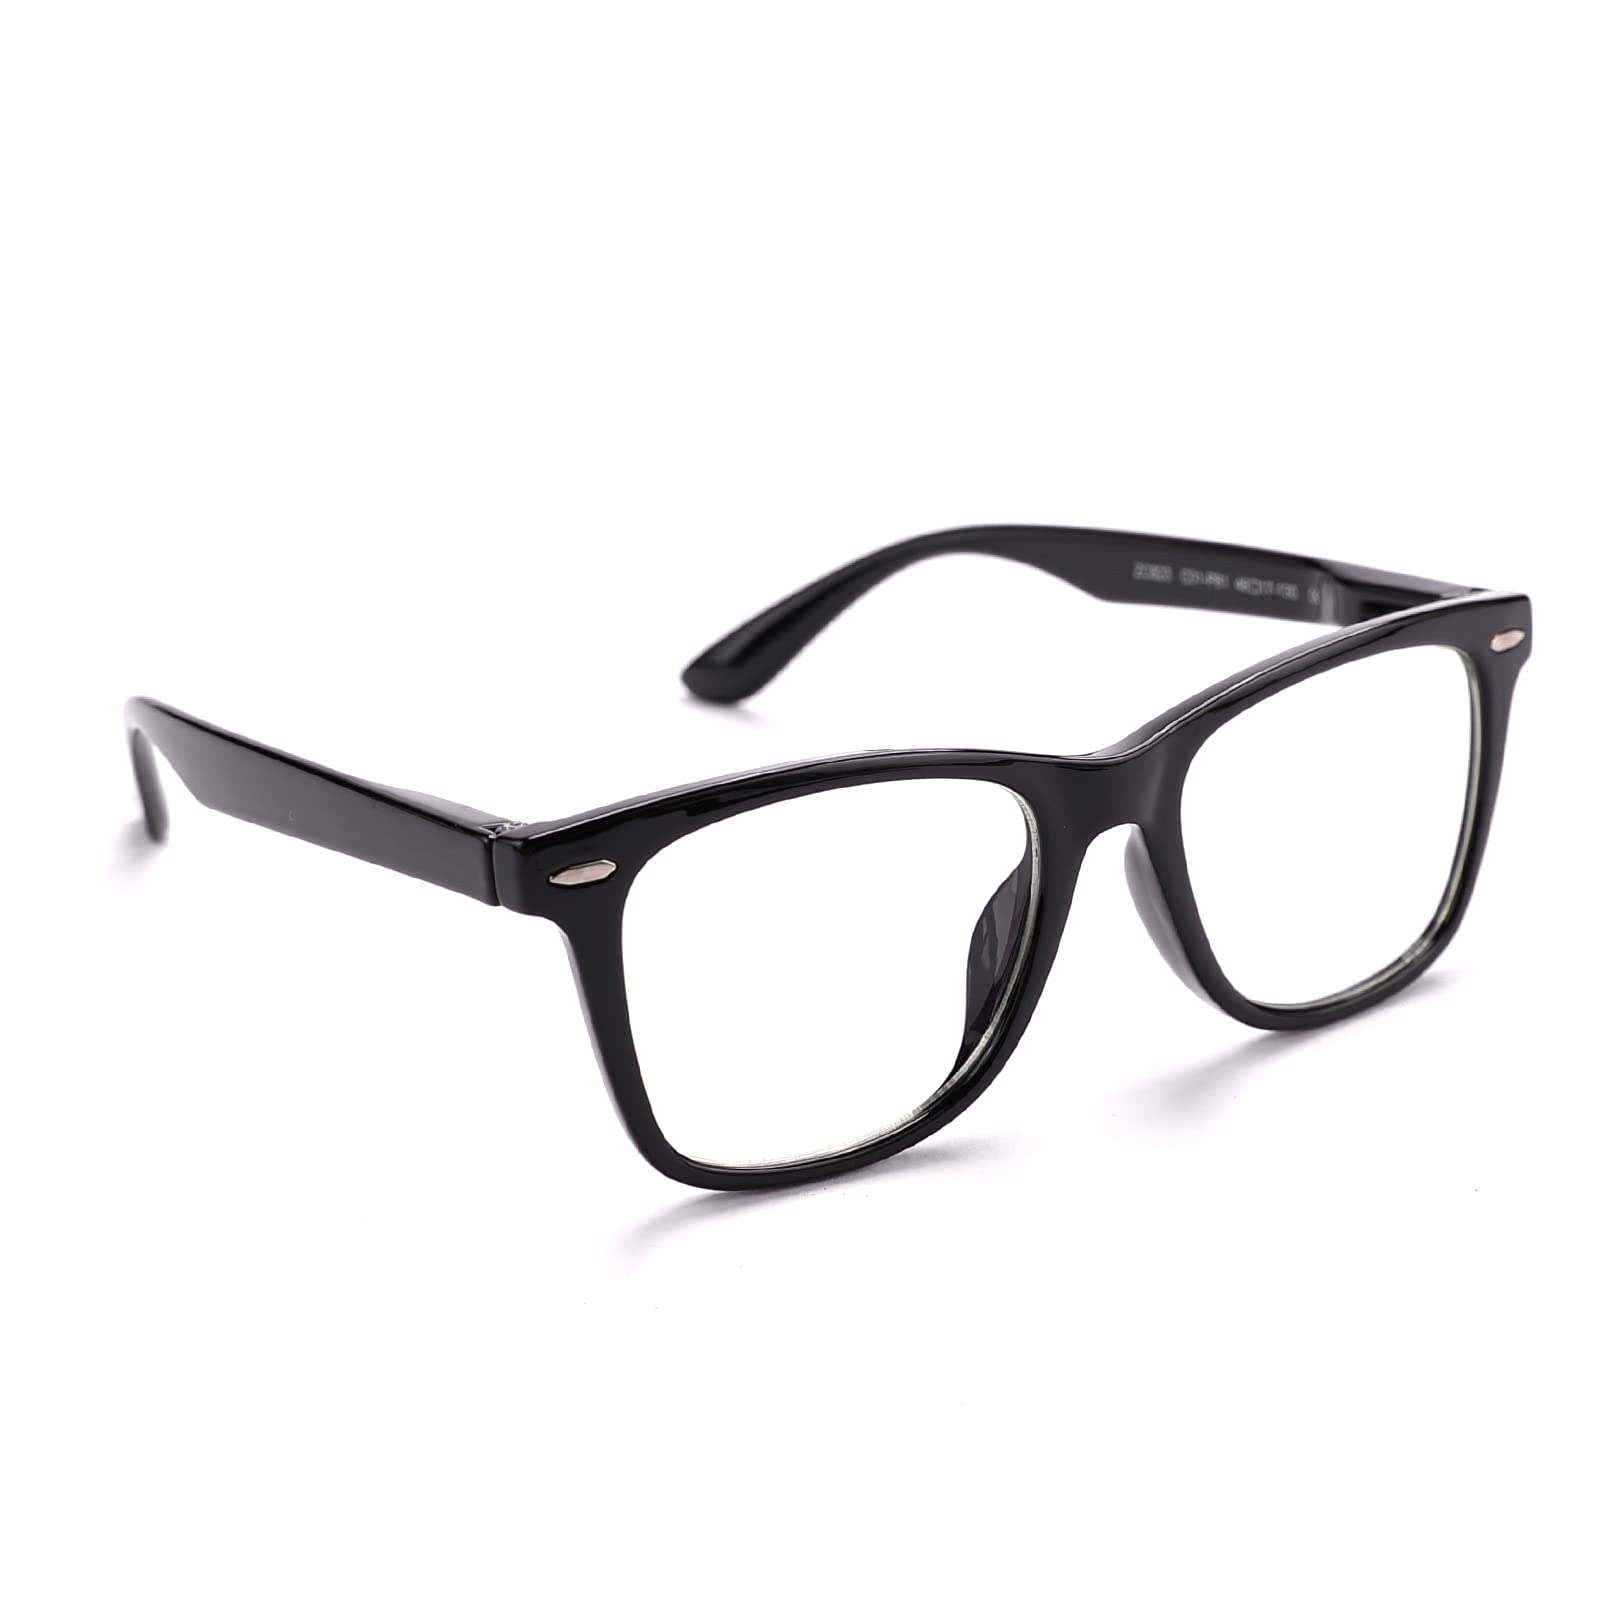 Intellilens Wayfarer Kids Computer Glasses for Eye Protection | Zero Power, Anti Glare & Blue Light Filter Glasses | Blue Cut Lenses for Boys and Girls (Black) (48-17-130)…